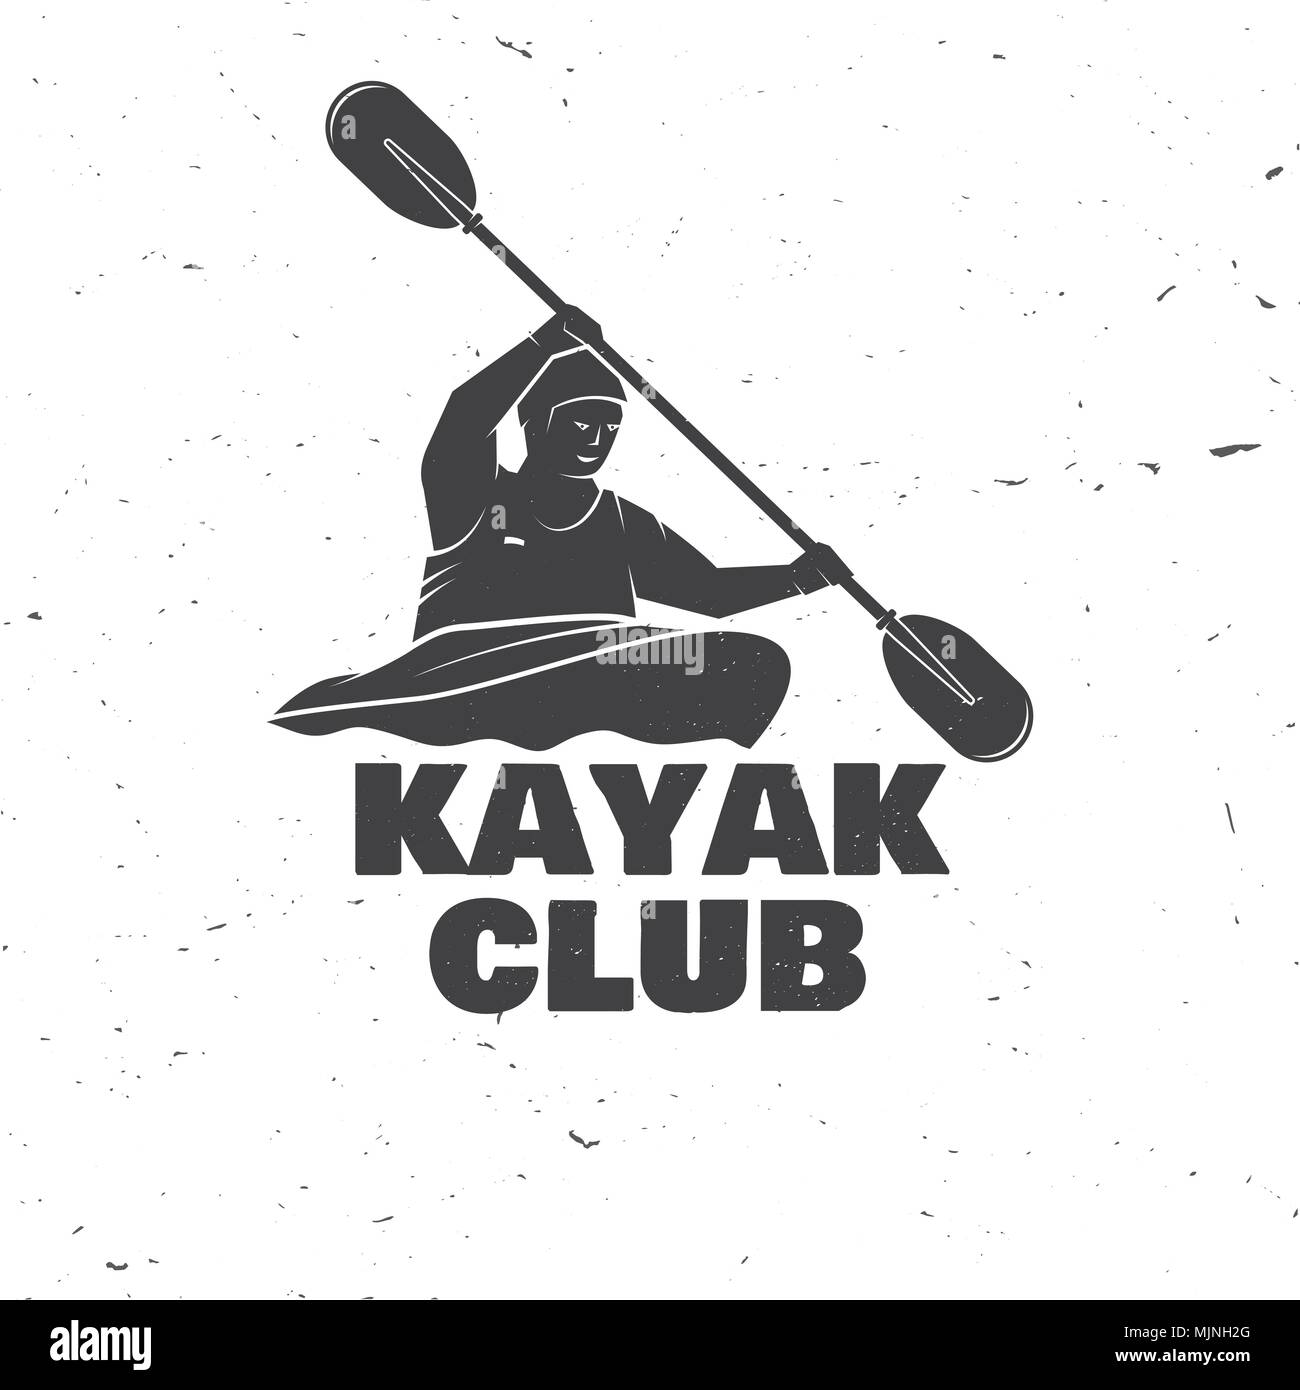 Kayak club. Ilustración vectorial. Concepto de camiseta, impresión, sellos o tee. Diseño con tipografía Vintage kayakista silueta. Deportes extremos. Ilustración del Vector